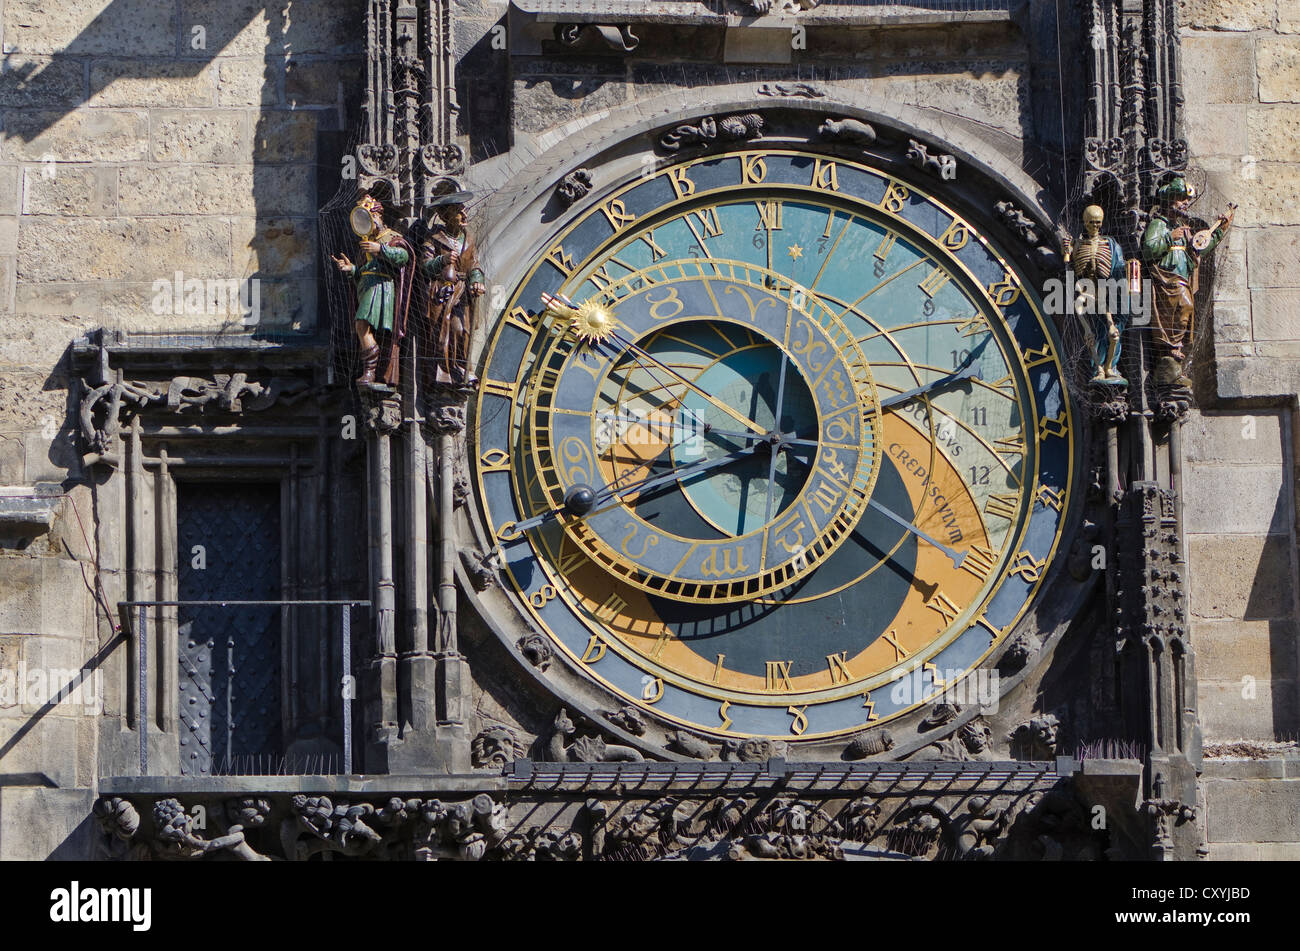 Prazsky orloj, l'horloge astronomique de Prague, l'hôtel de ville, construit en 1410 par l'horloger royal Mikulas de Kadan, Prague Banque D'Images